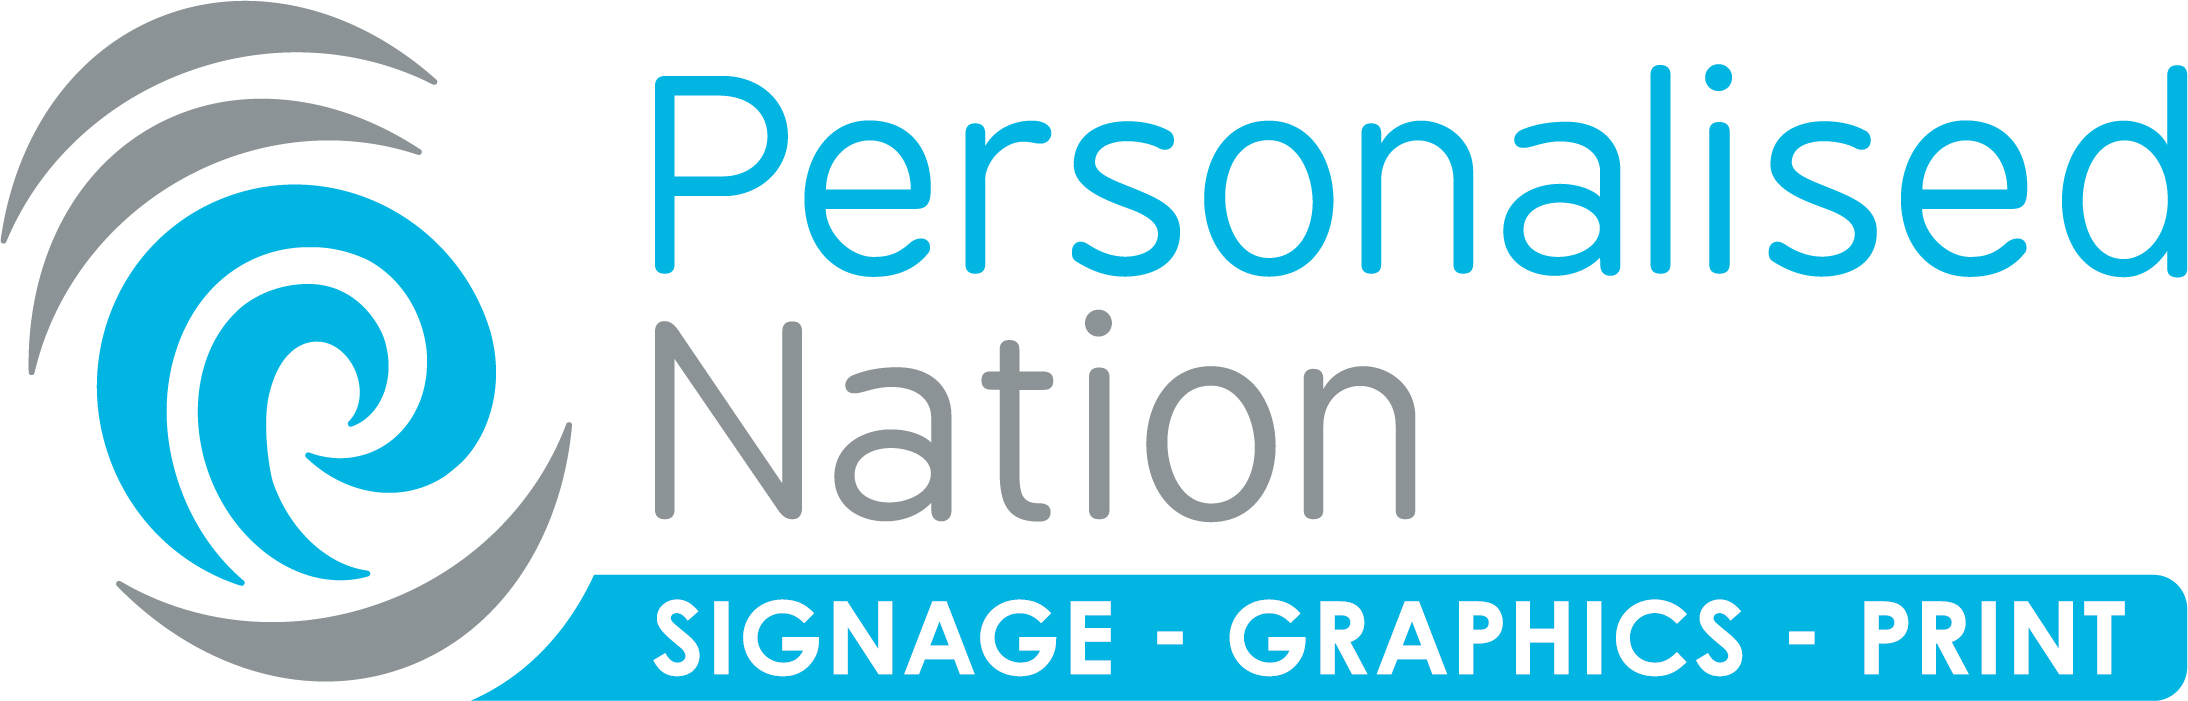 Personalised Nation Ltd